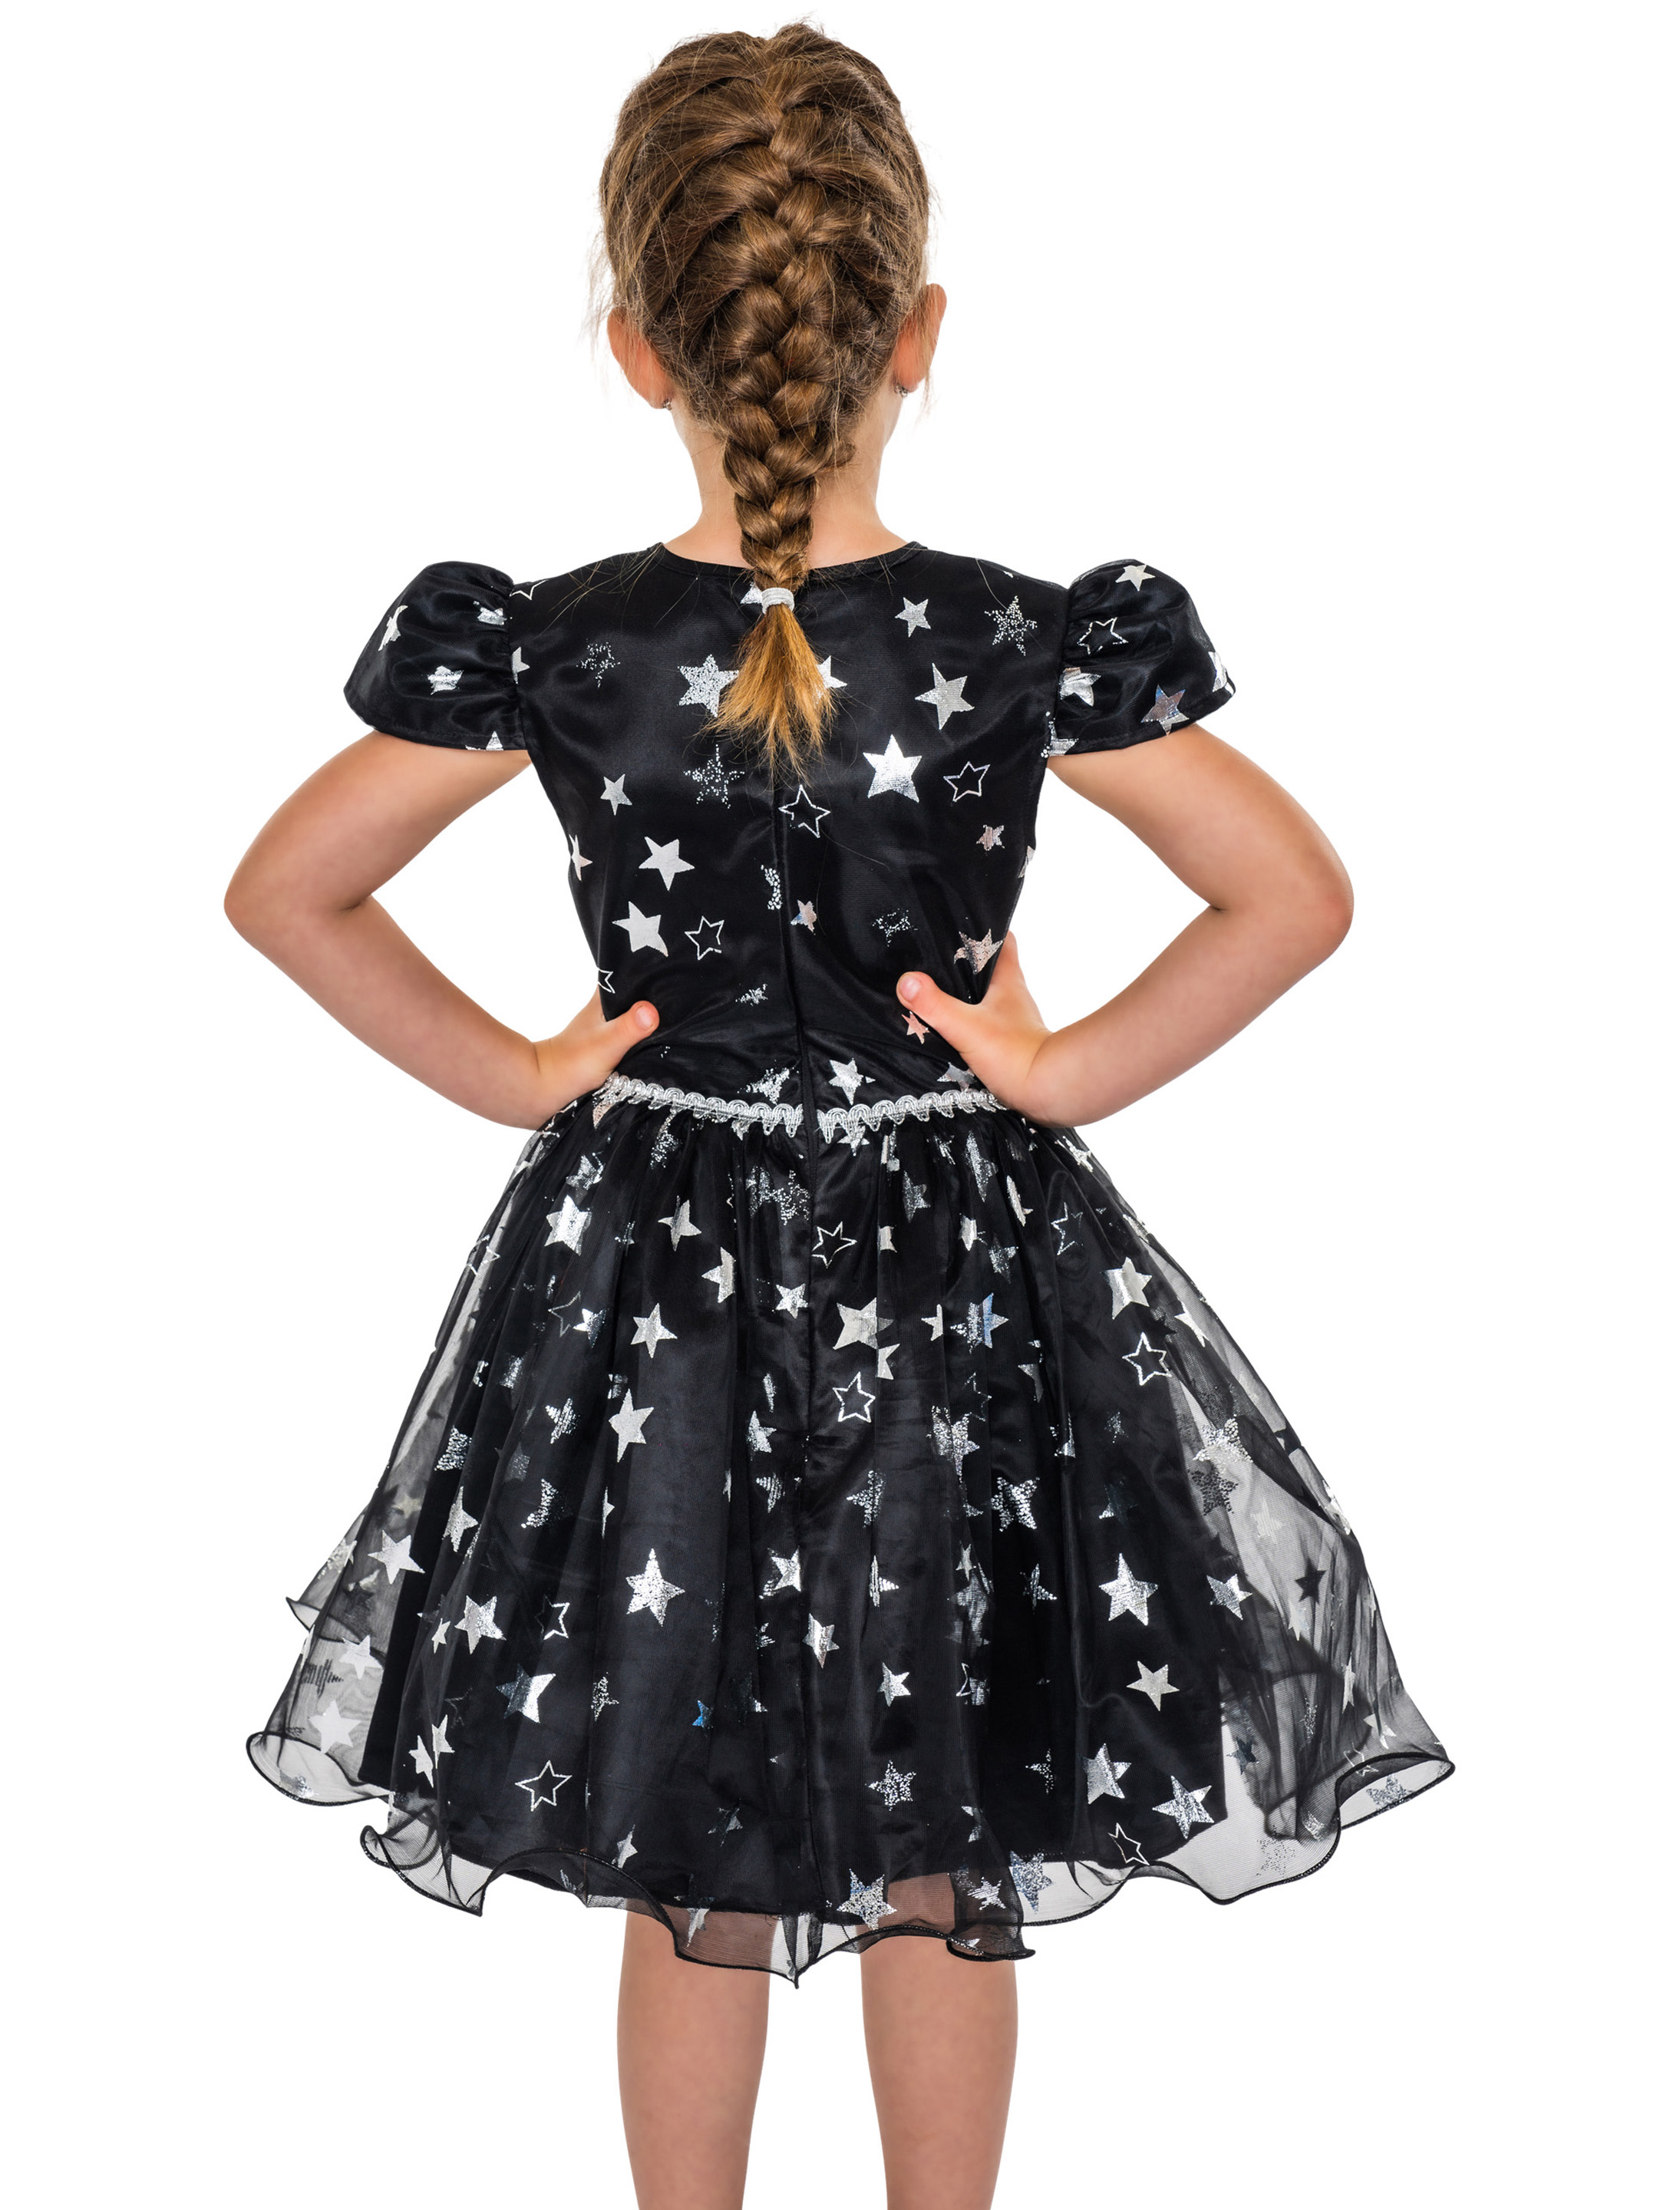 Kleid Hexe mit Sternen silber schwarz 134